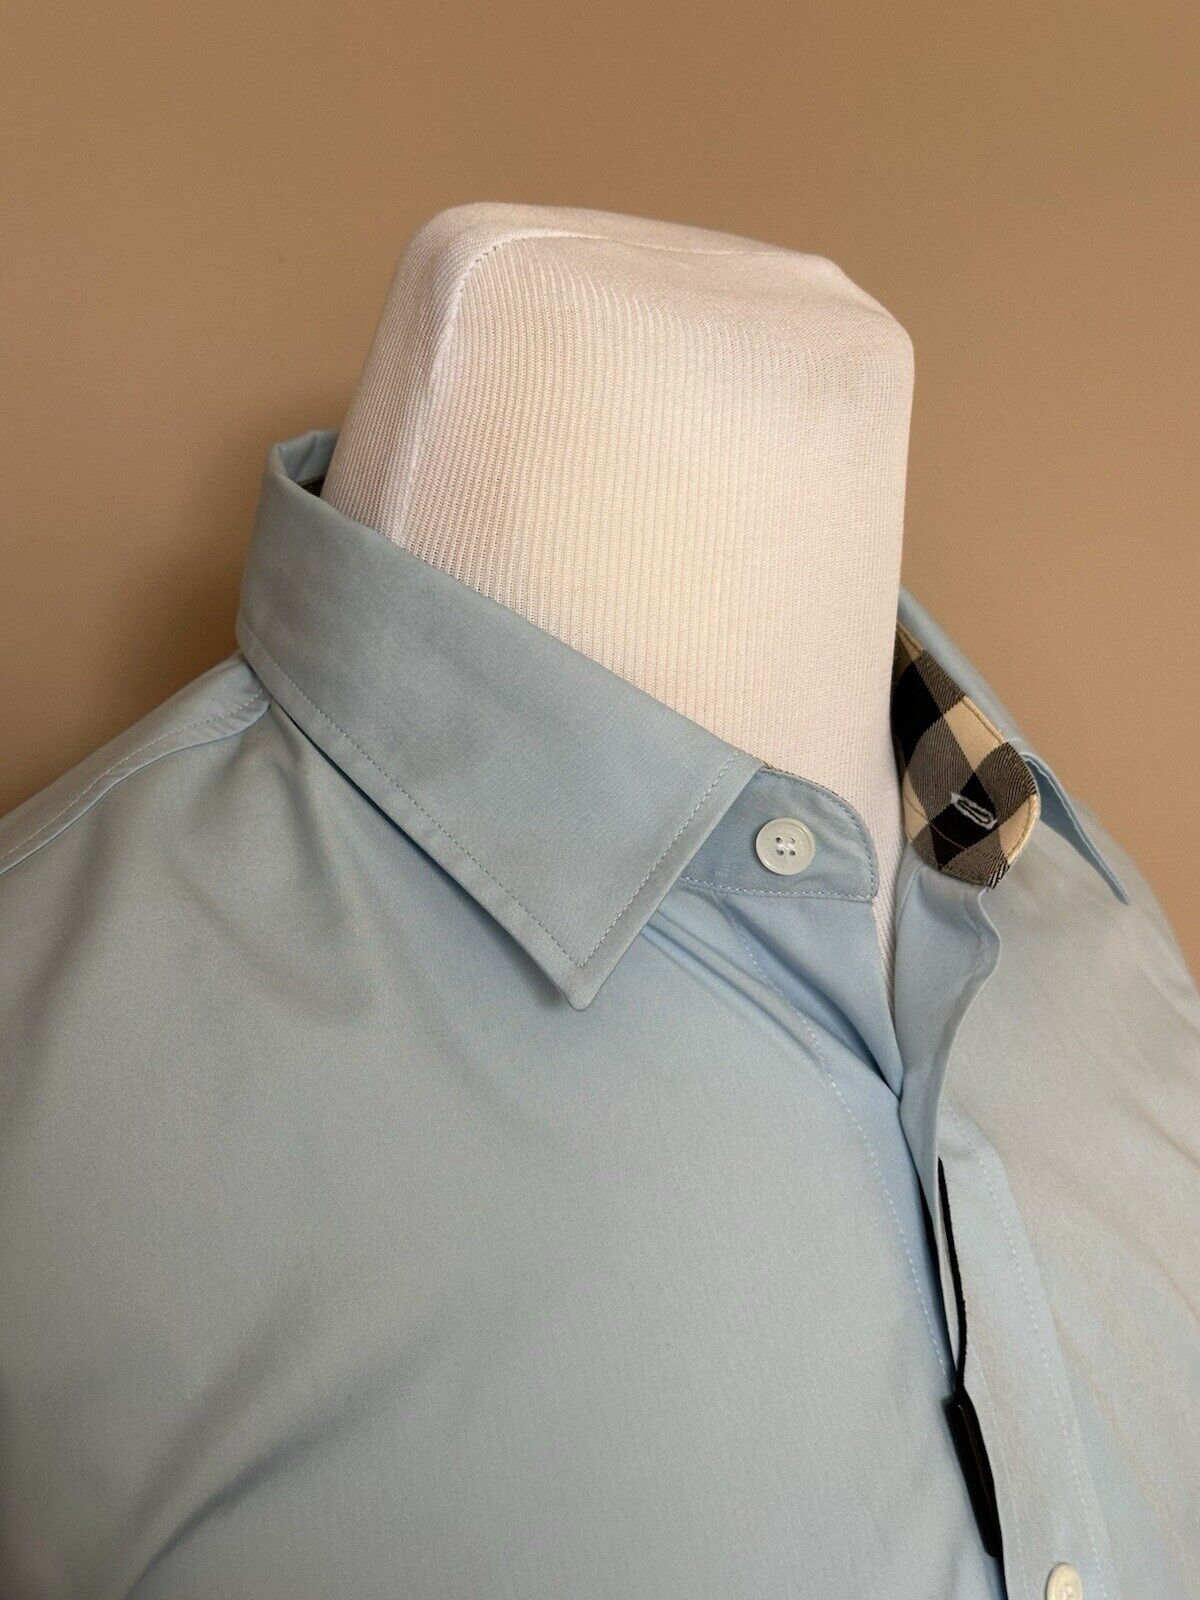 Burberry Cambridge Men's Pale Blue Cotton Button-Up Shirt 2XL 8036294 NWT $390